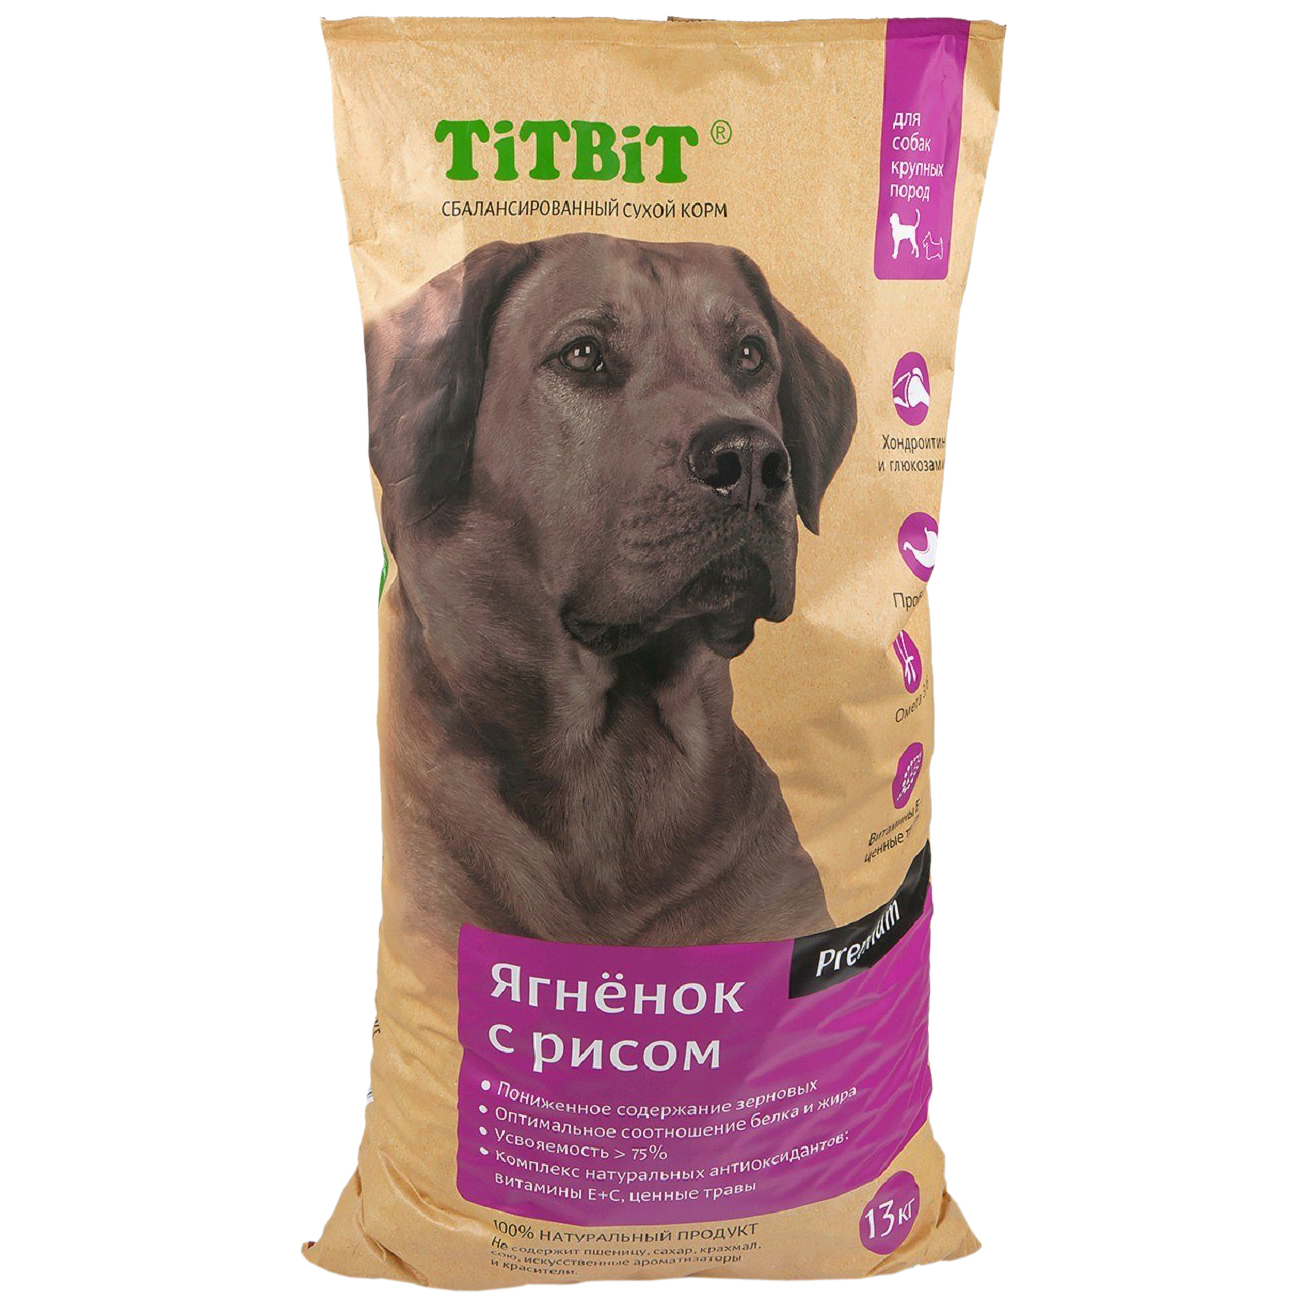 Сухой корм для щенков TiTBiT Premium, для крупных пород, ягненок и рис, 13кг